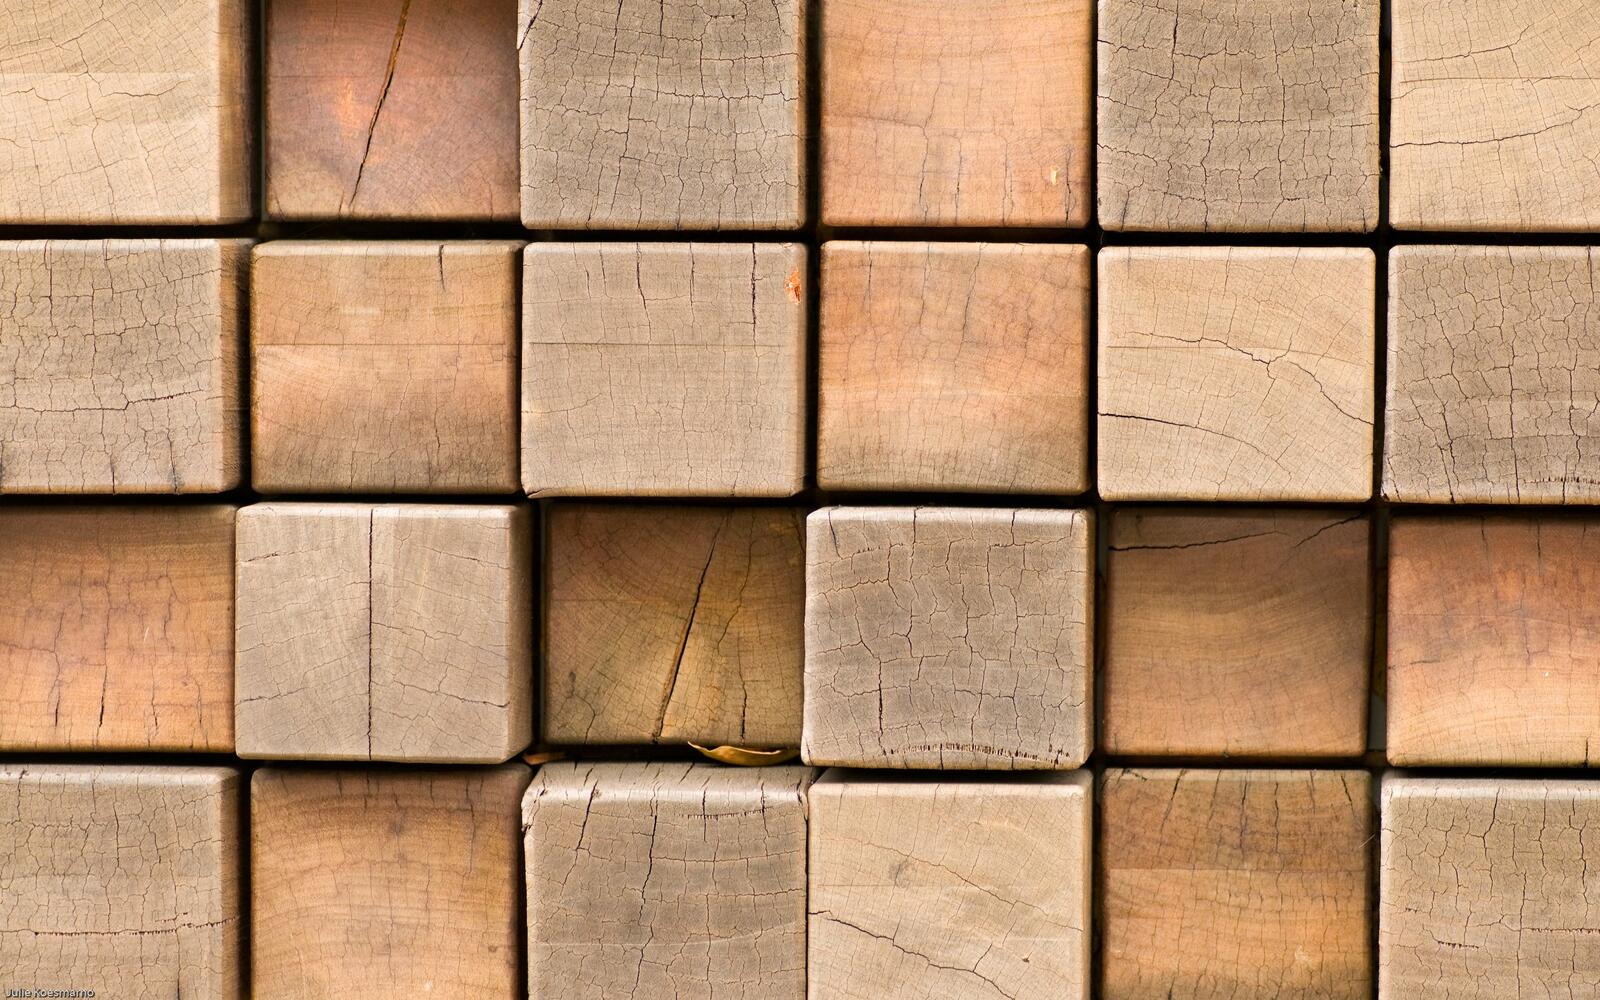 桌面上的壁纸方形 立方体 墙纸木质表面